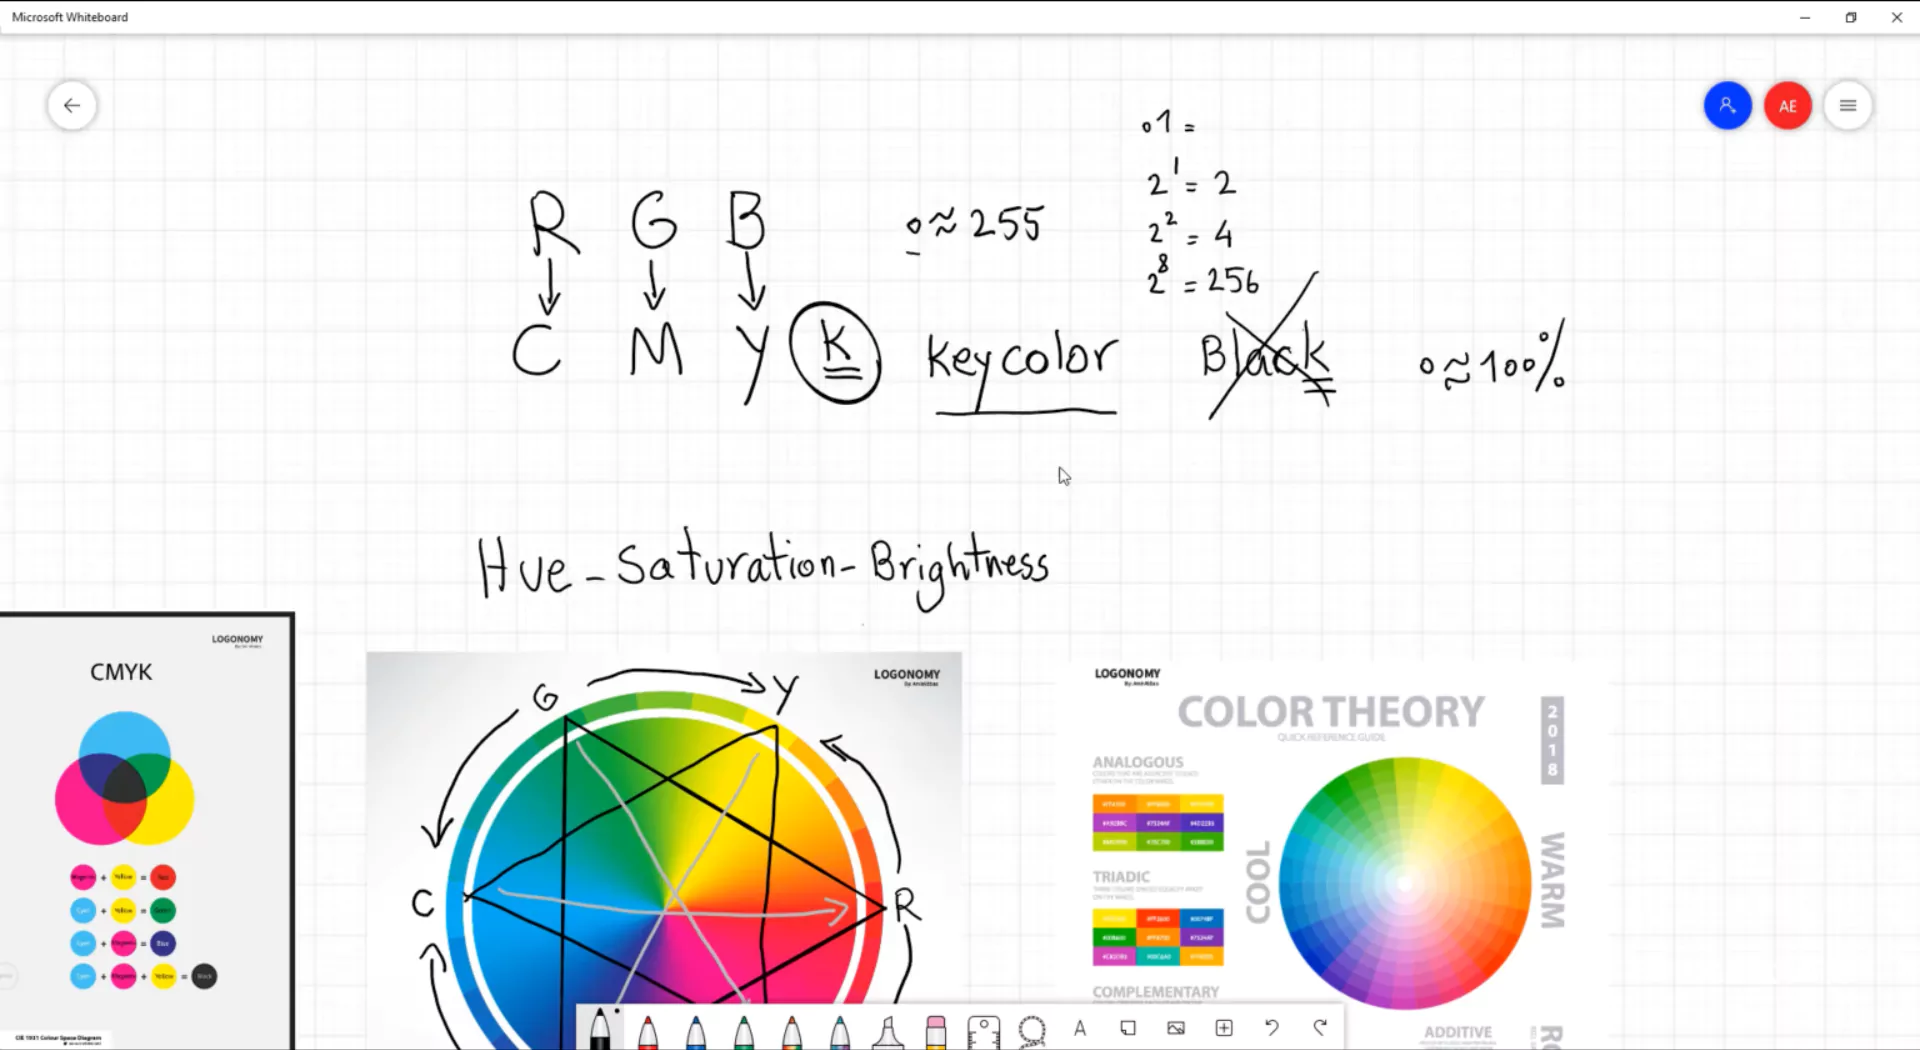 آشنایی با تئوری رنگ ها در نرم افزار فتوشاپ